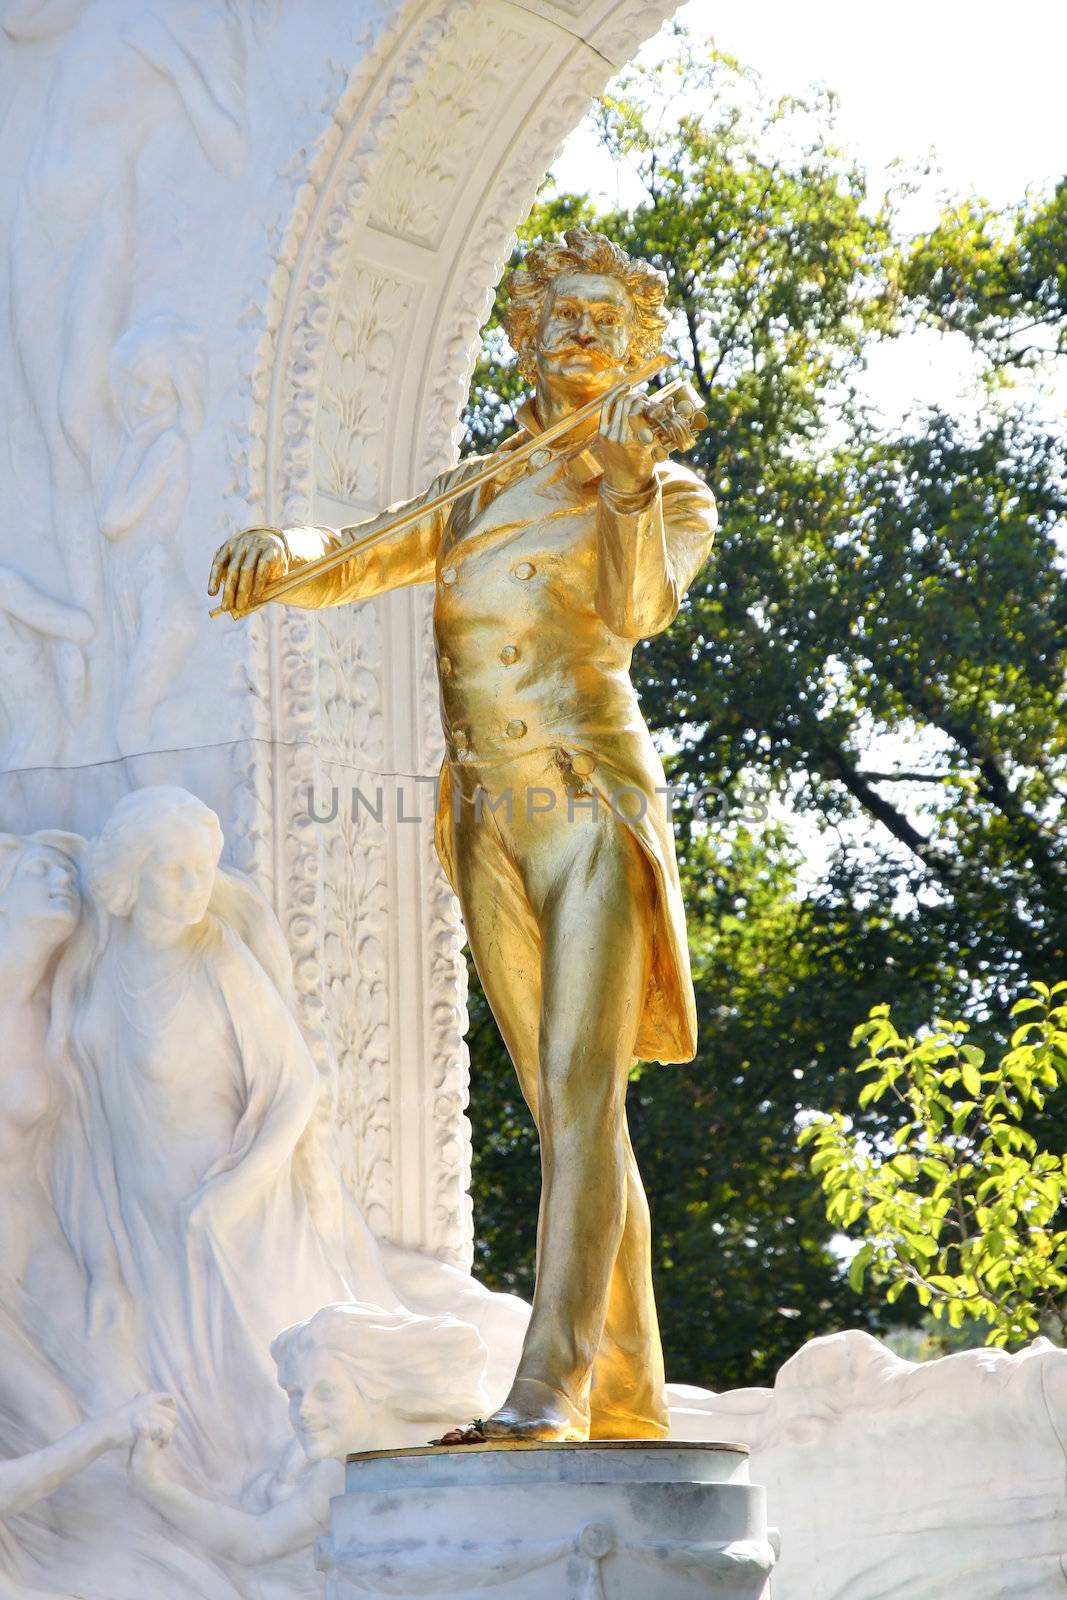 The statue of Johann Strauss in Stadtpark, Vienna, Austria